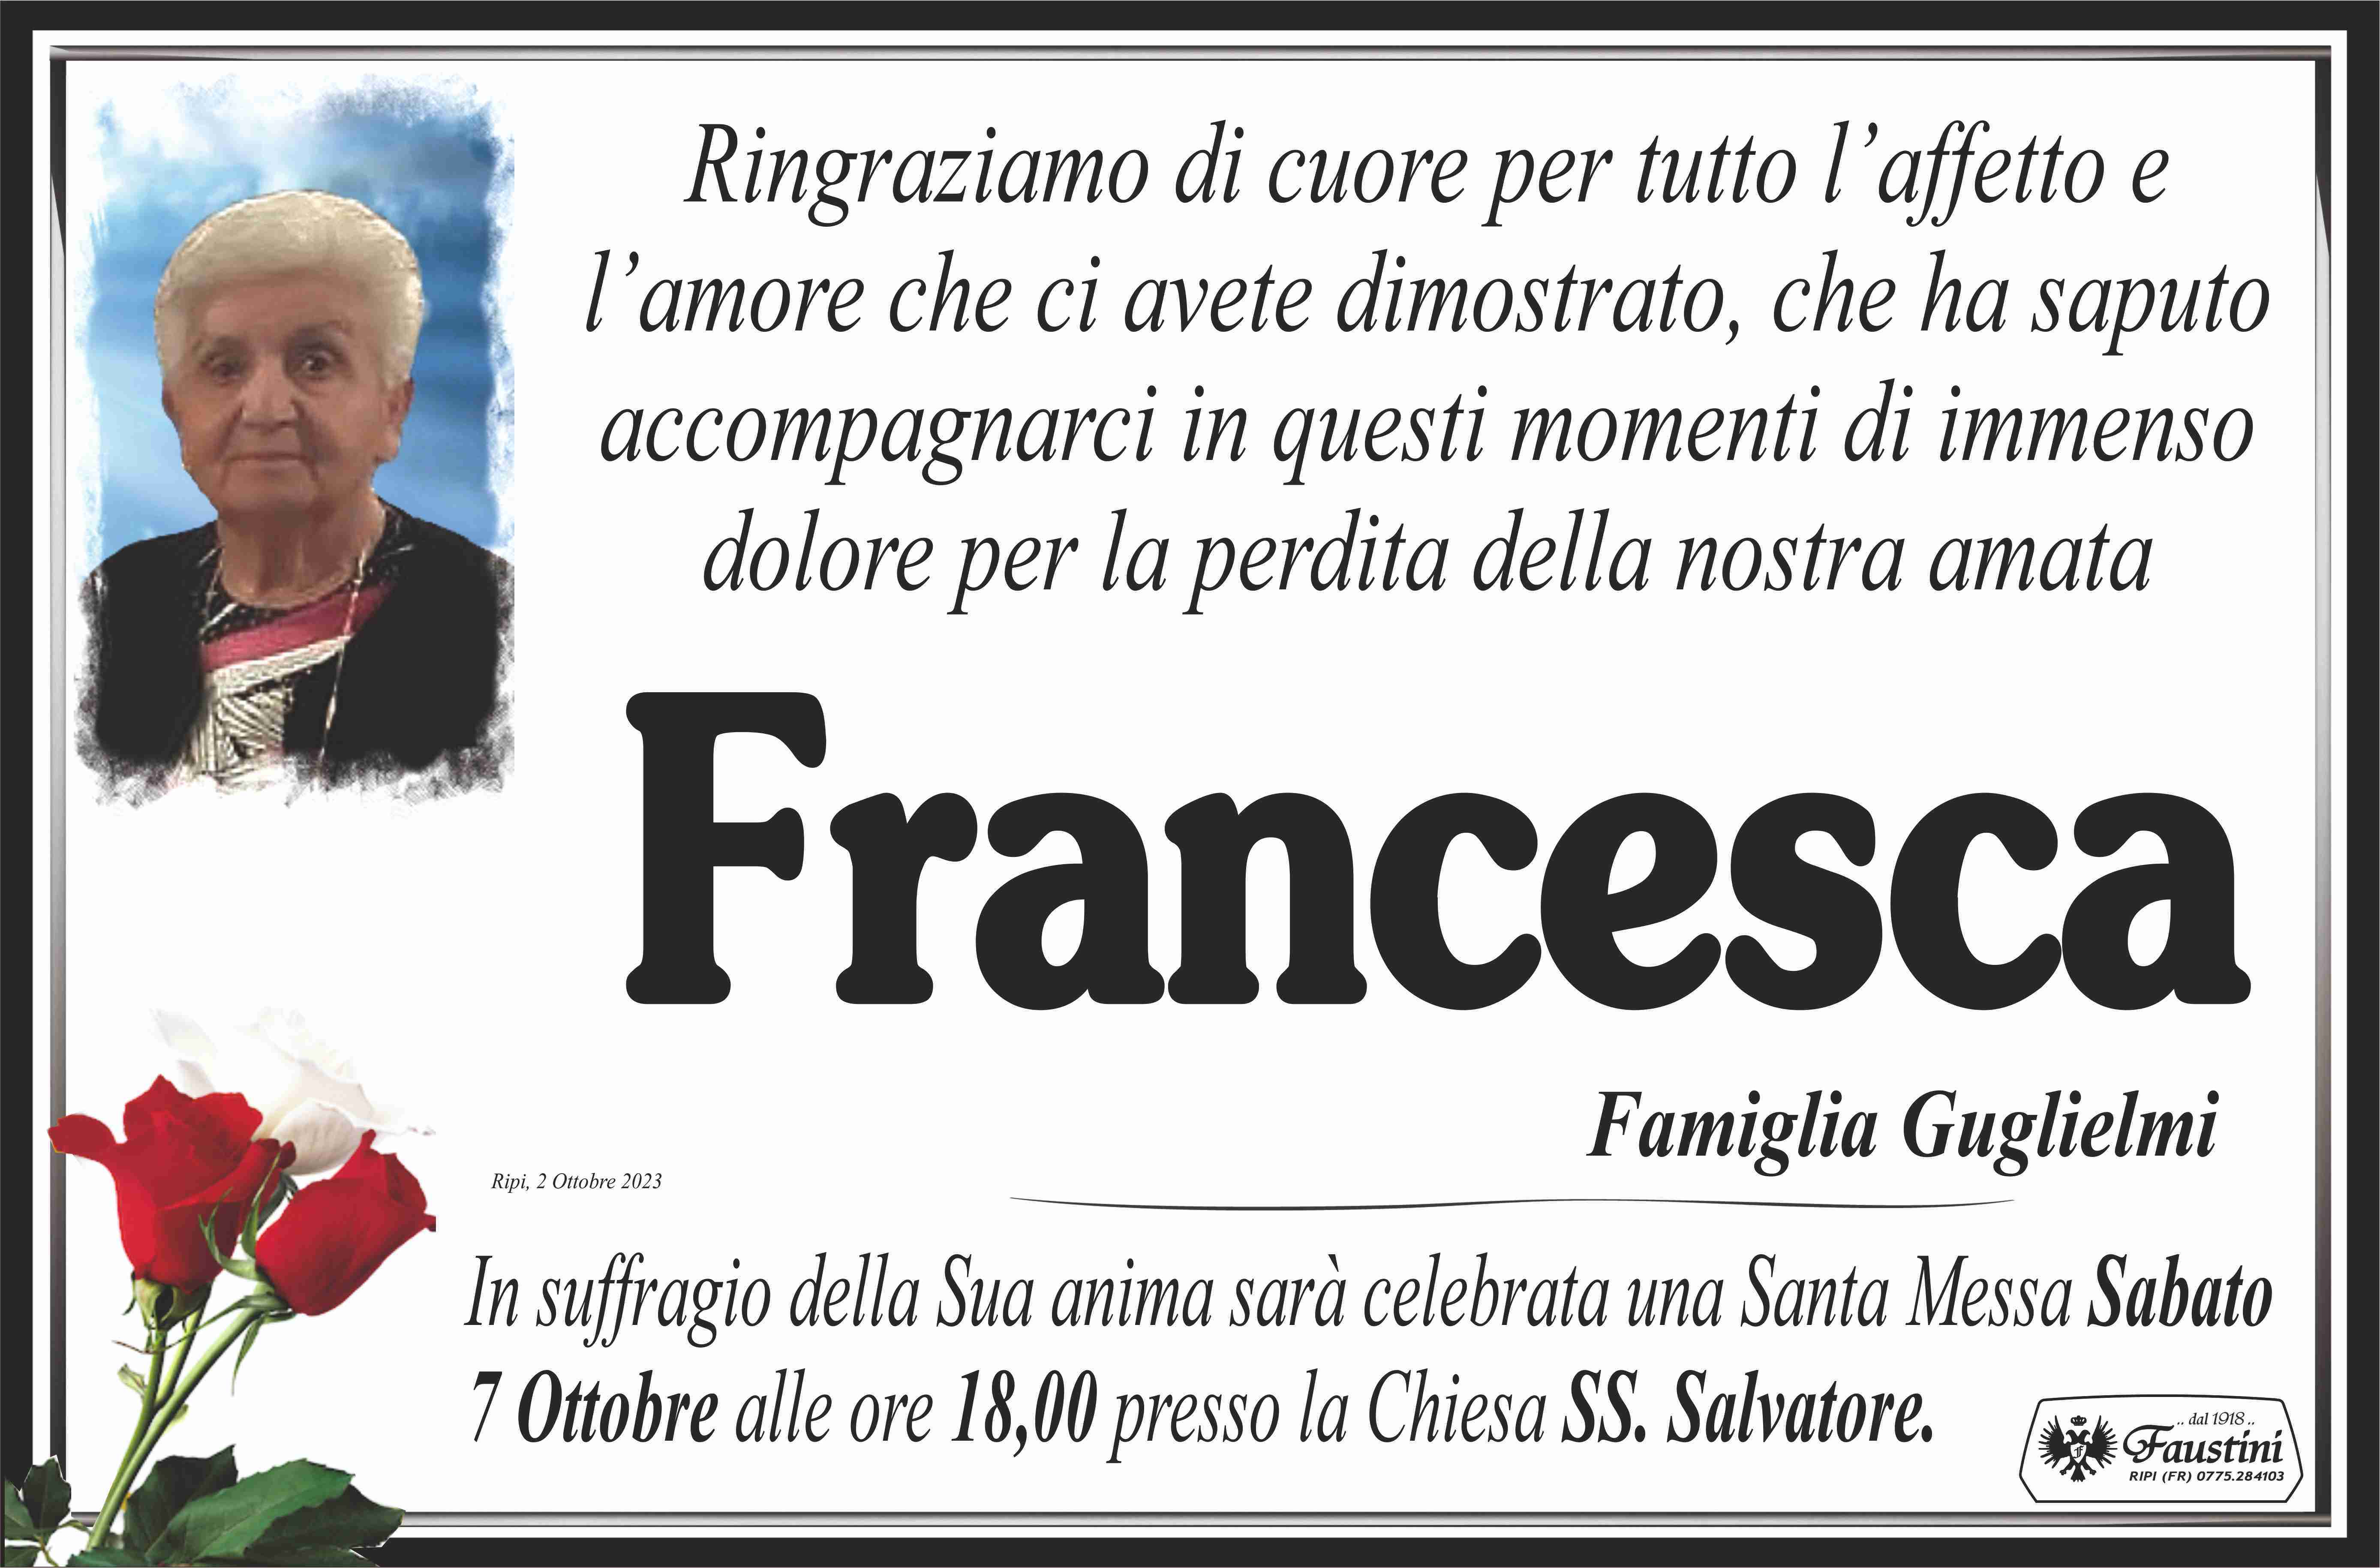 Francesca Zangrilli